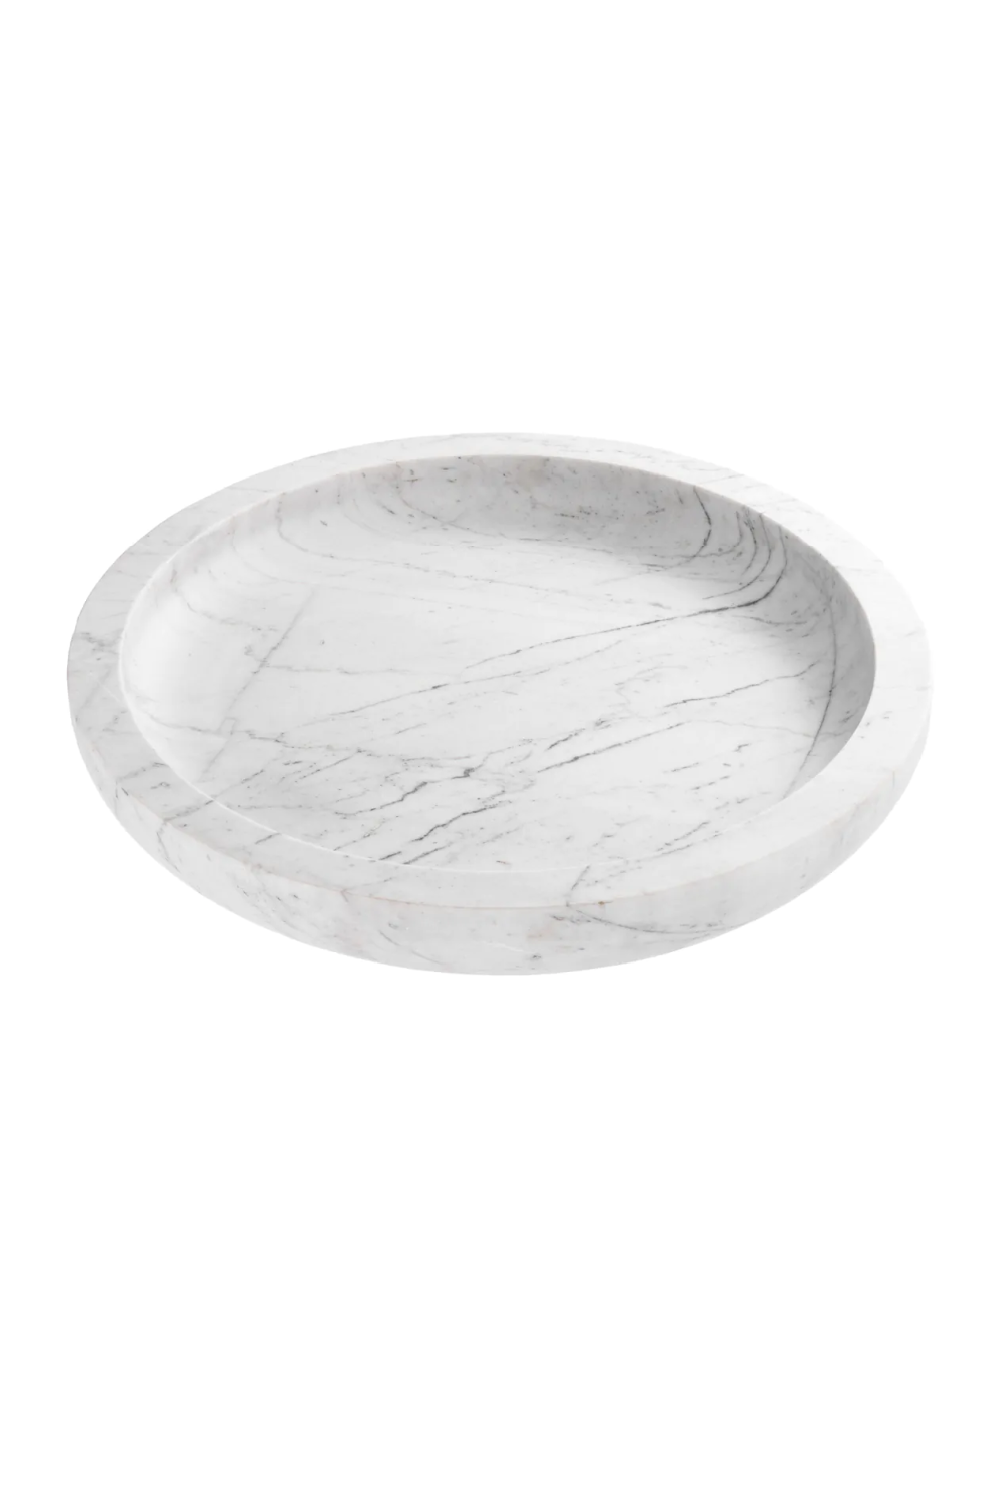 White Marble Bowl | Eichholtz Renard | Oroa.com